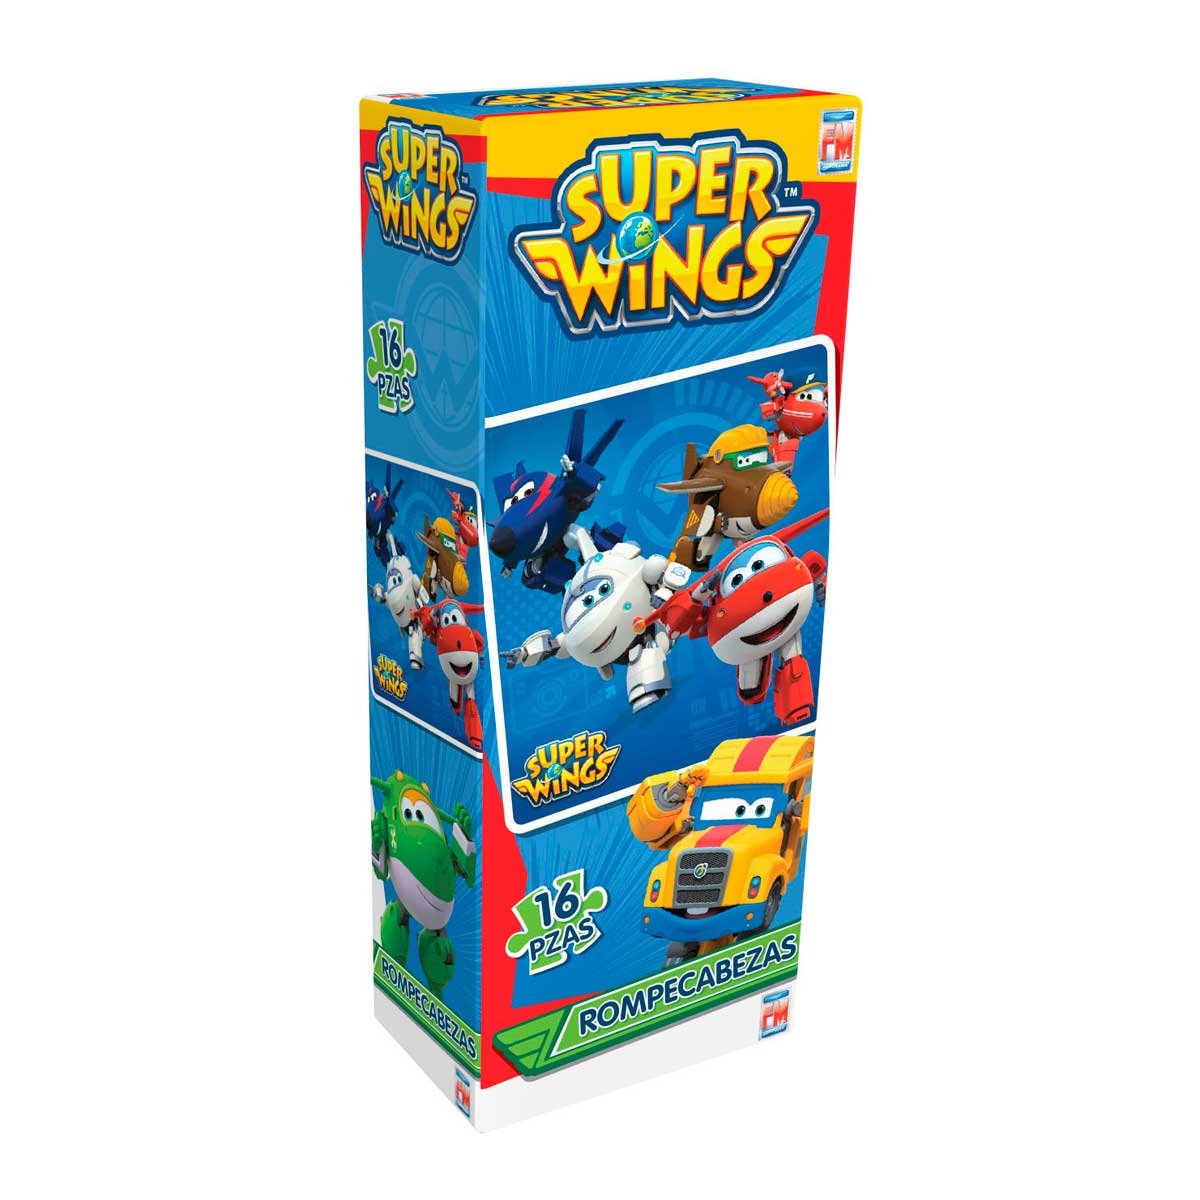 Rompecabezas Super Wings 16 Piezas Fotorama - Juego de Mesa